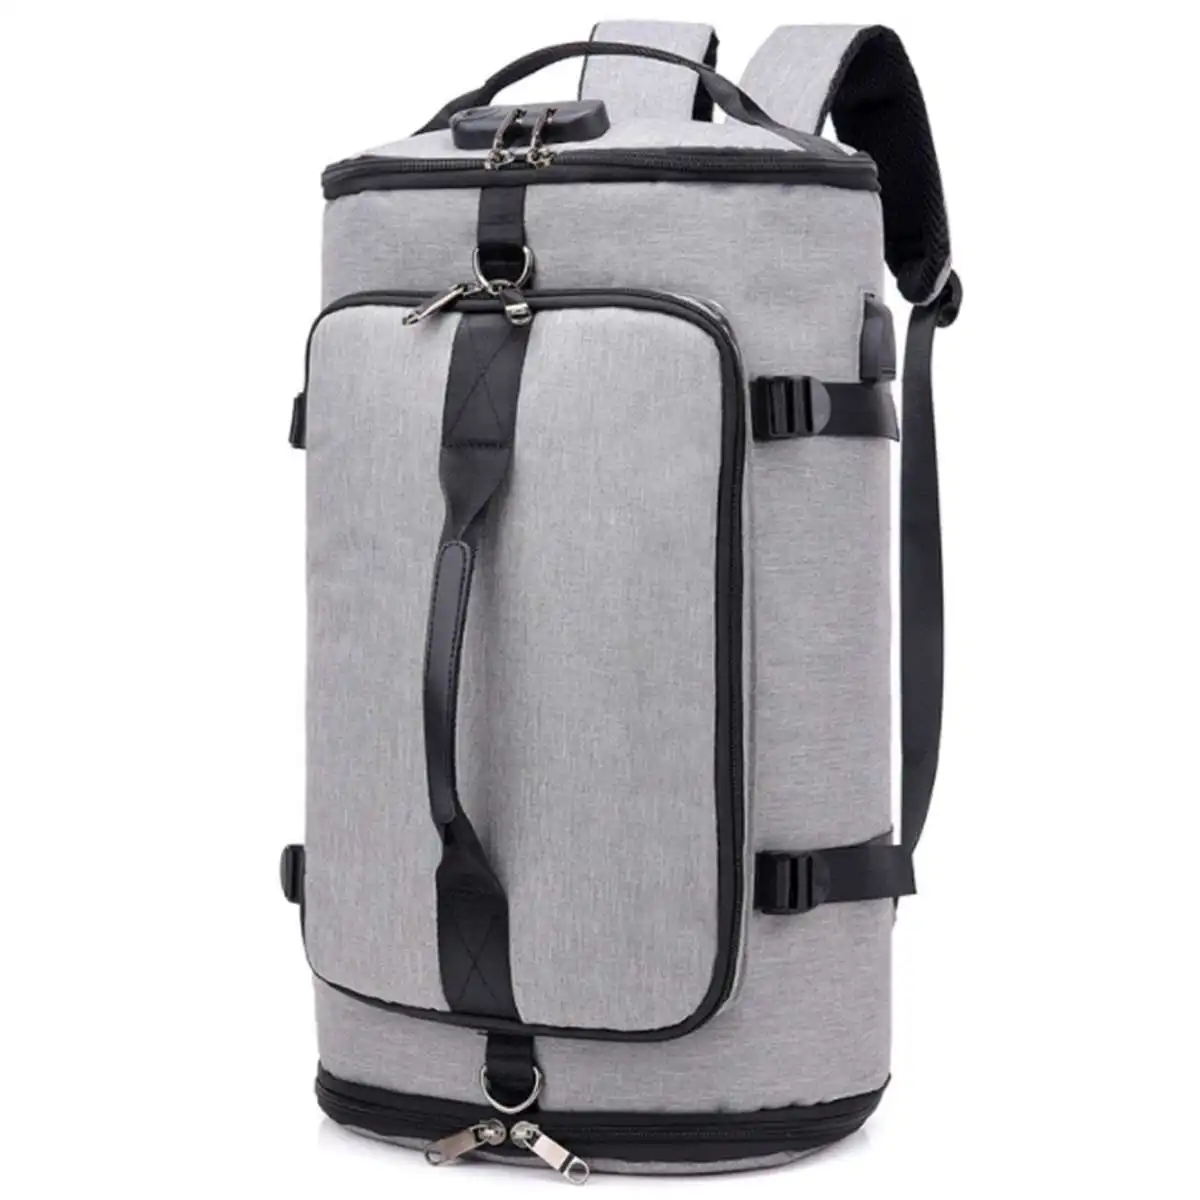 Мужская сумка для путешествий, нейлоновая сумка, мужская обувь, рюкзак для путешествий, спортивная сумка, рюкзак, многофункциональная сумка, сумки для спортзала, для хранения обуви - Цвет: Серый